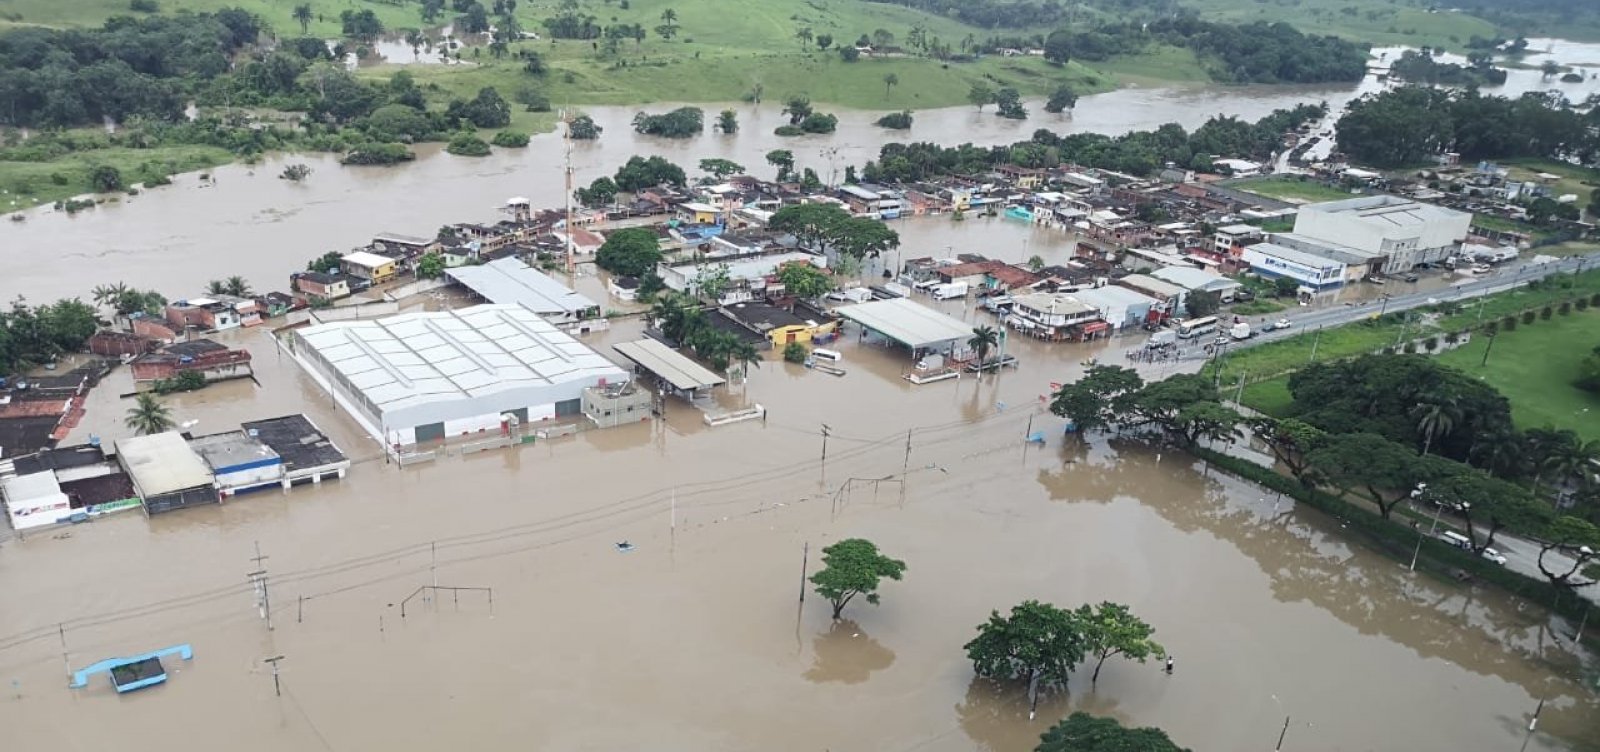 União não envia novos recursos para socorrer municípios atingidos pelas enchentes, diz Sesab